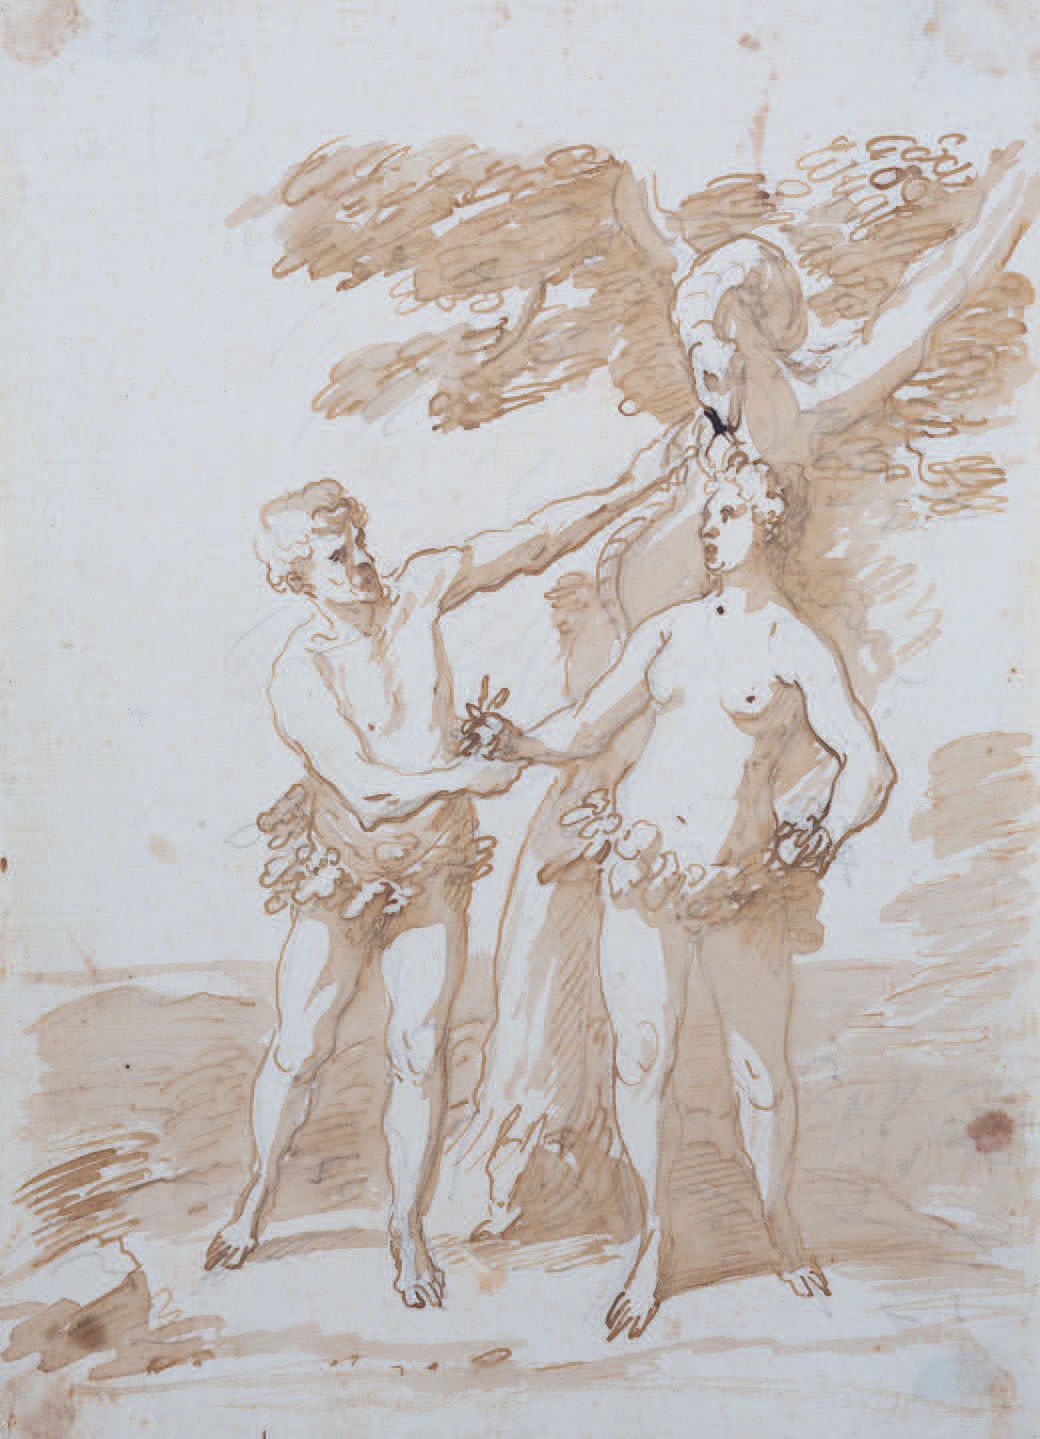 Scuola Italiana del XVII/XVIII secolo 
Adam und Eva
Feder, braune Tinte, braun l&hellip;